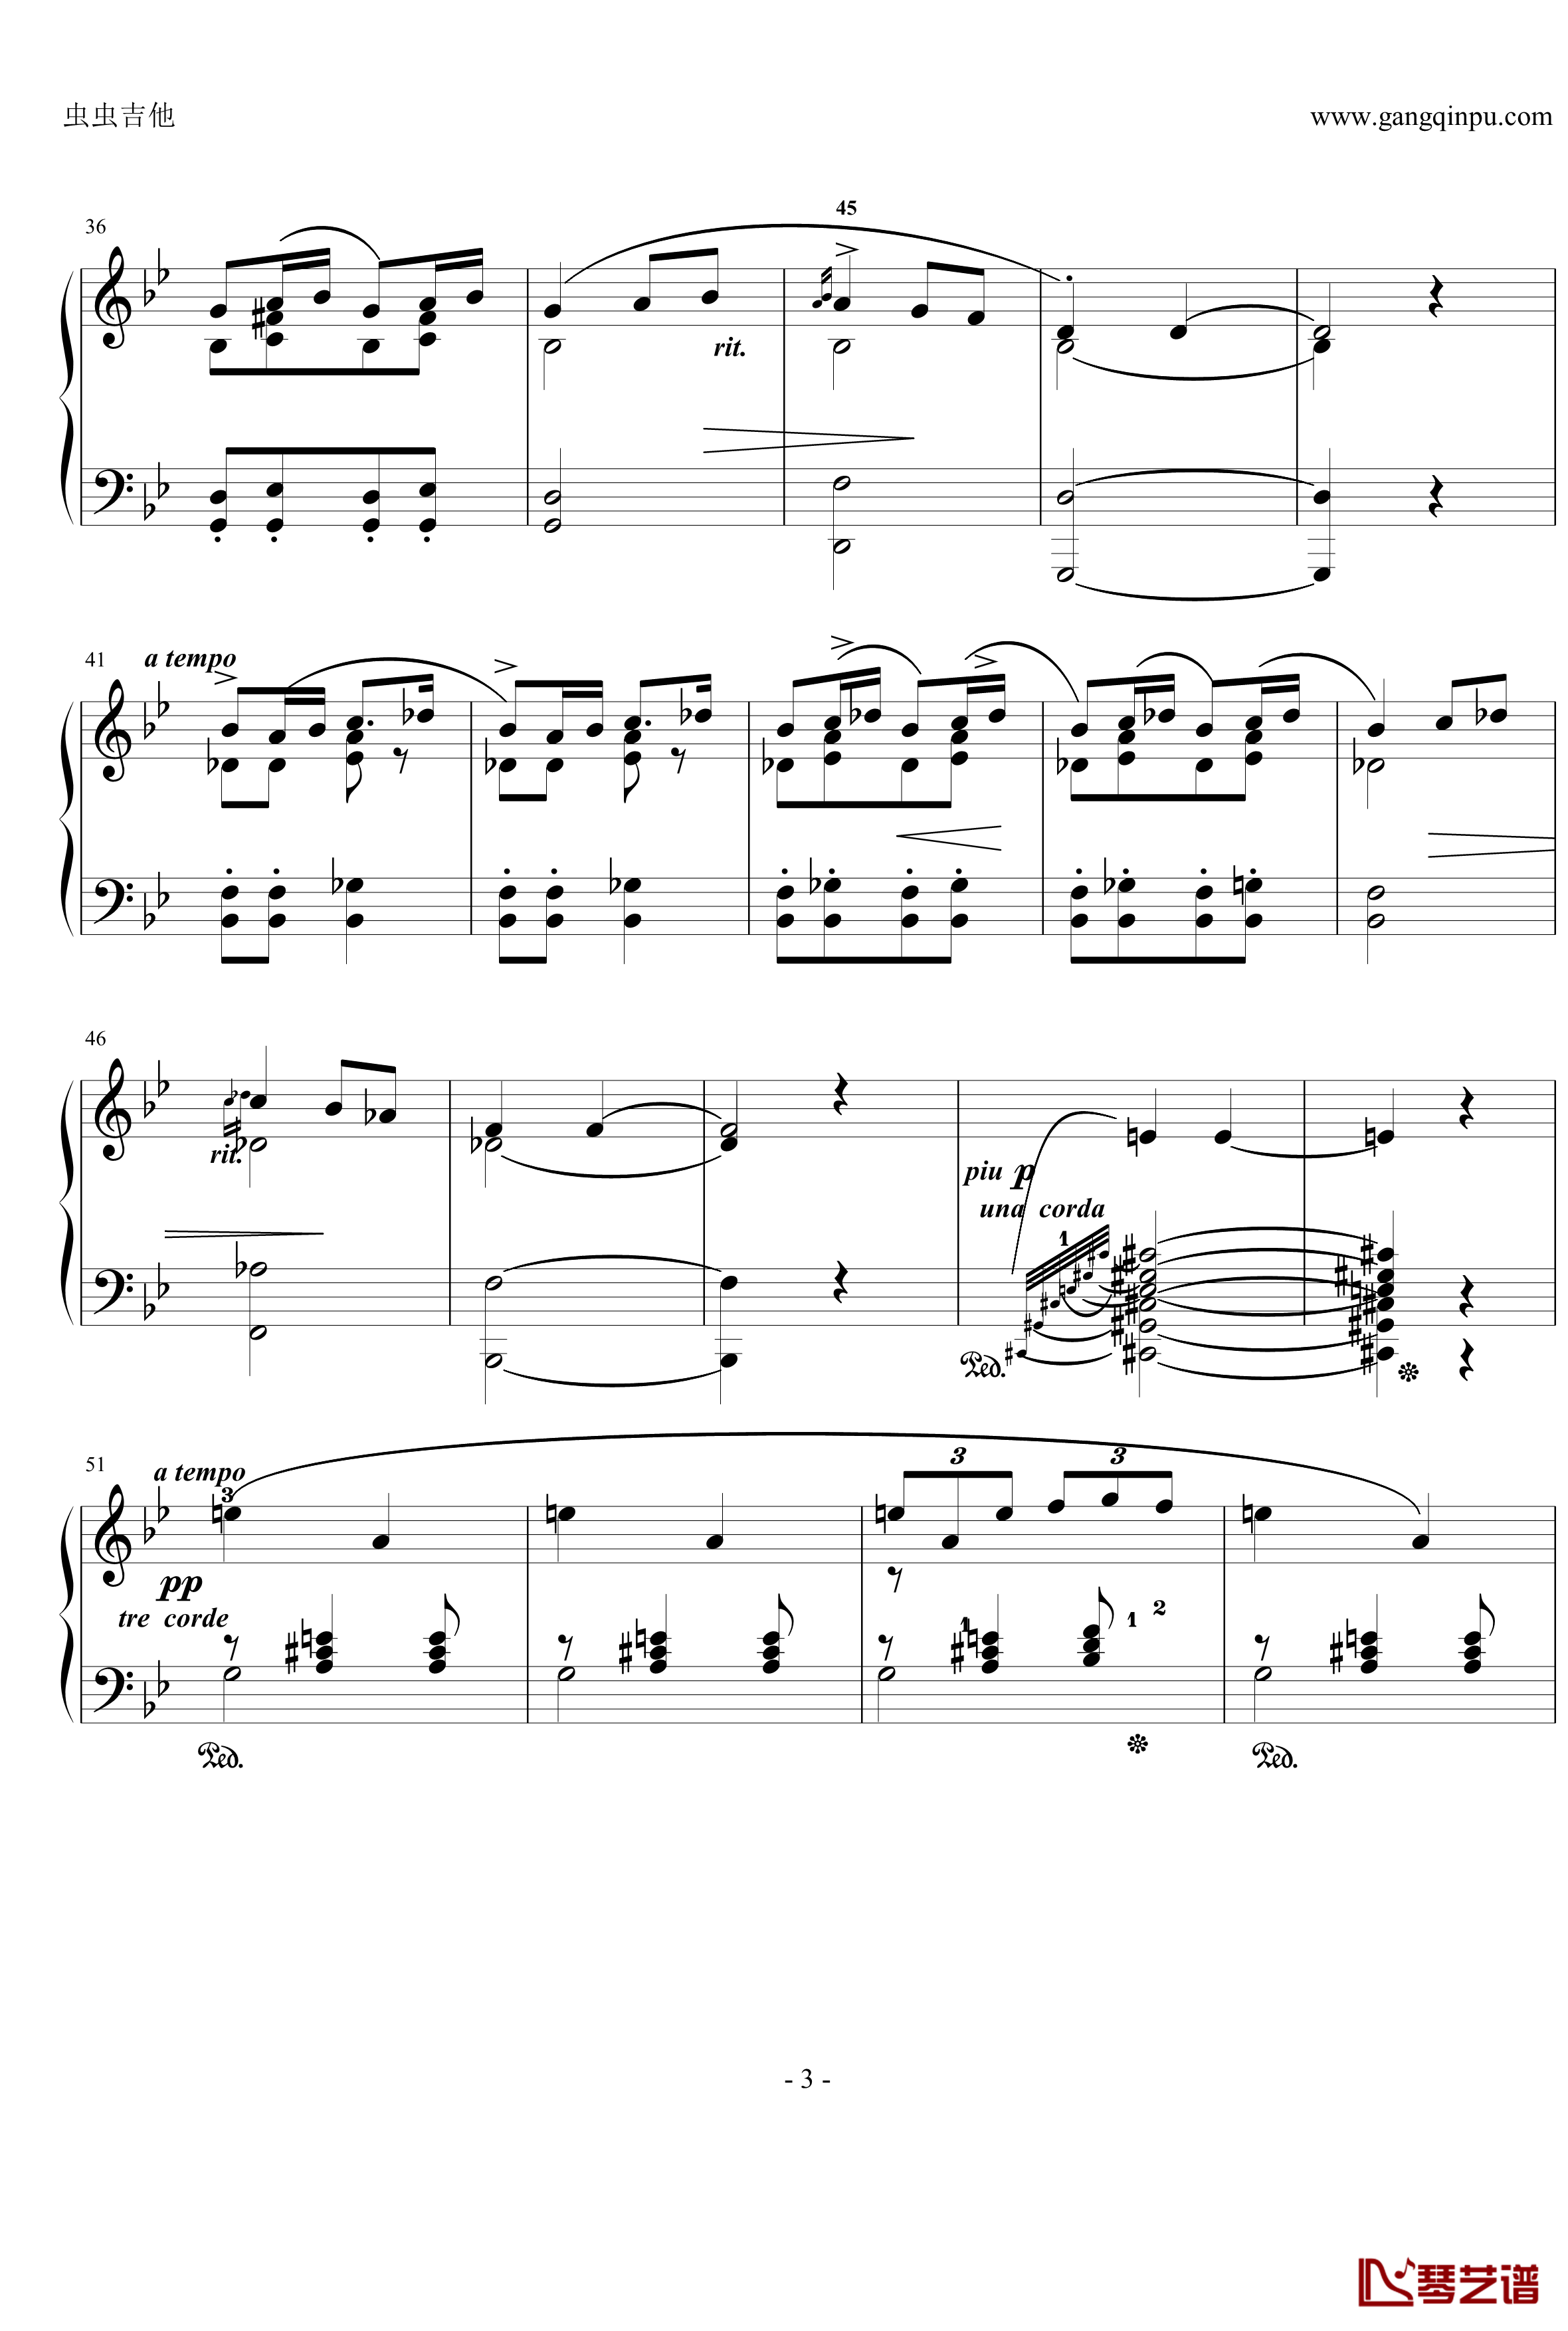 摇篮曲钢琴谱-格里格3